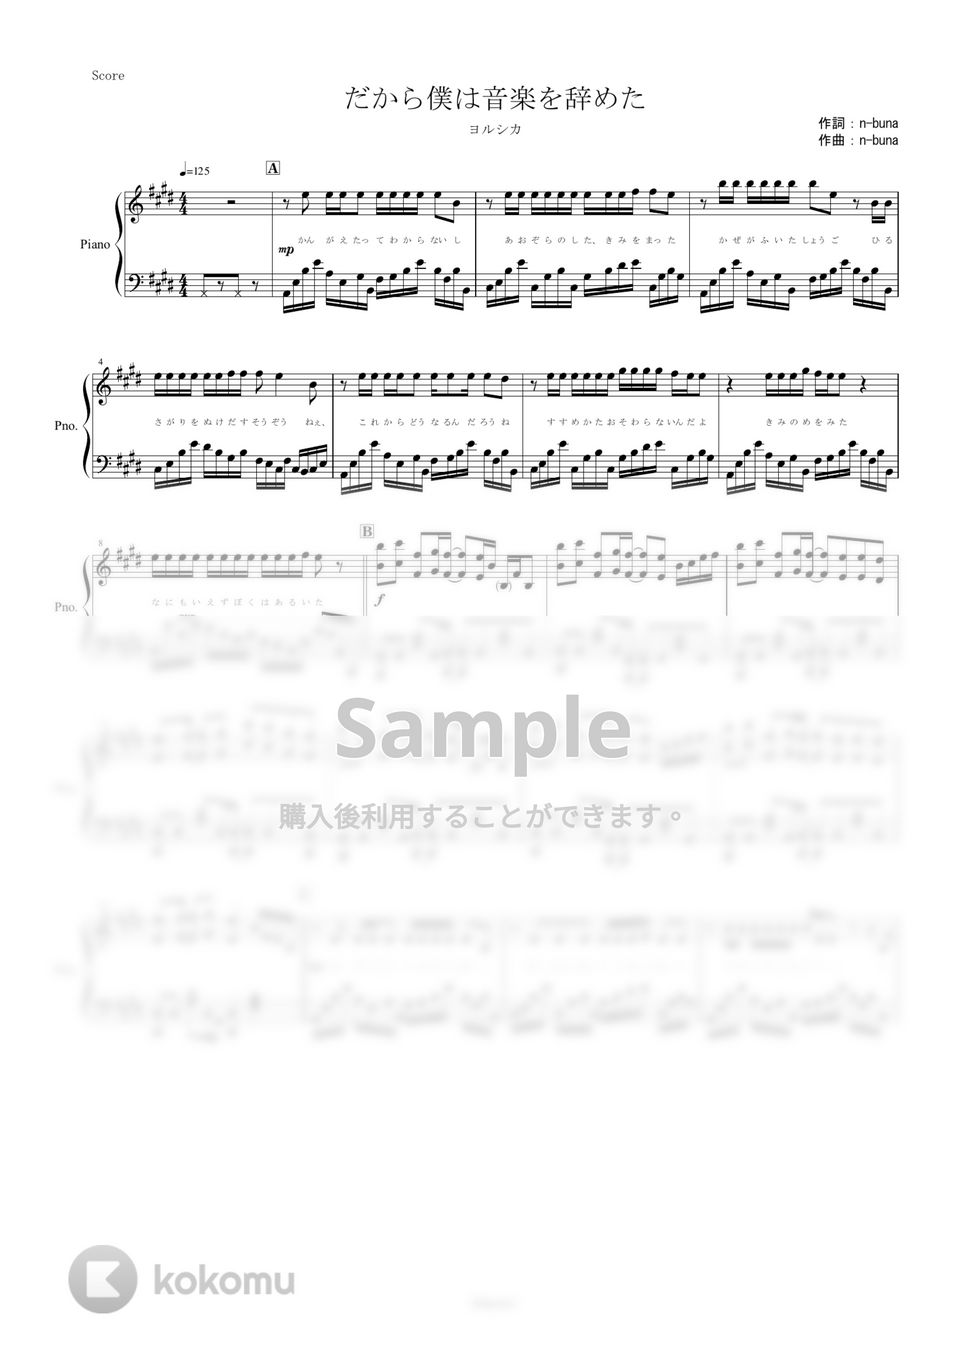 ヨルシカ - だから僕は音楽を辞めた (ピアノ楽譜/全６ページ/上級) by yoshi